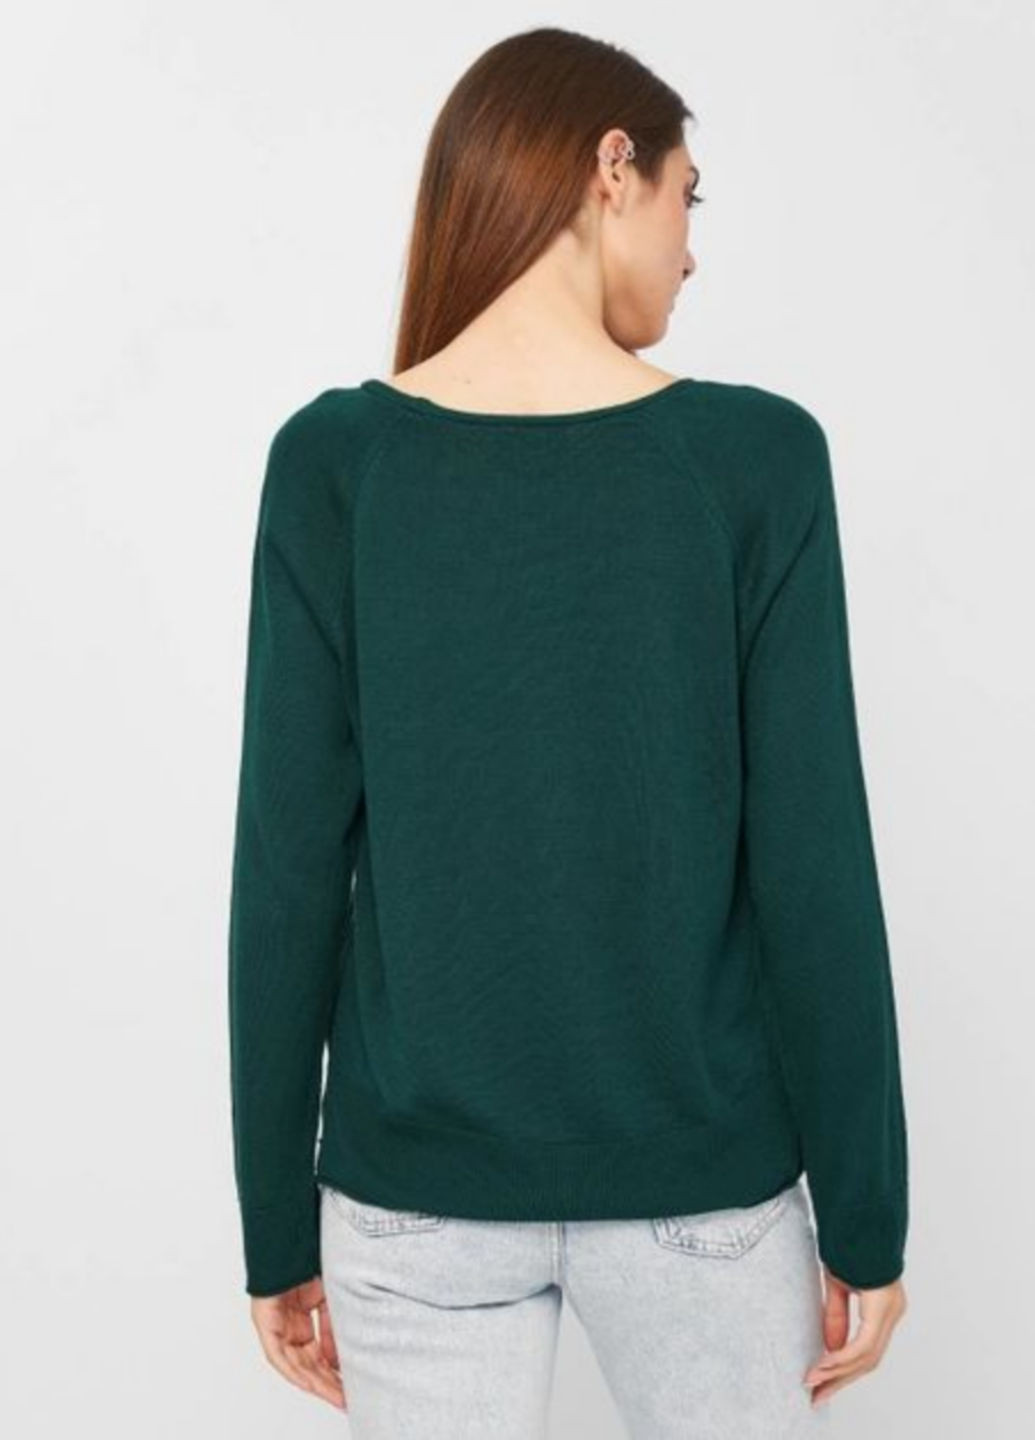 Темно-зеленый демисезонный пуловер пуловер Stradivarius